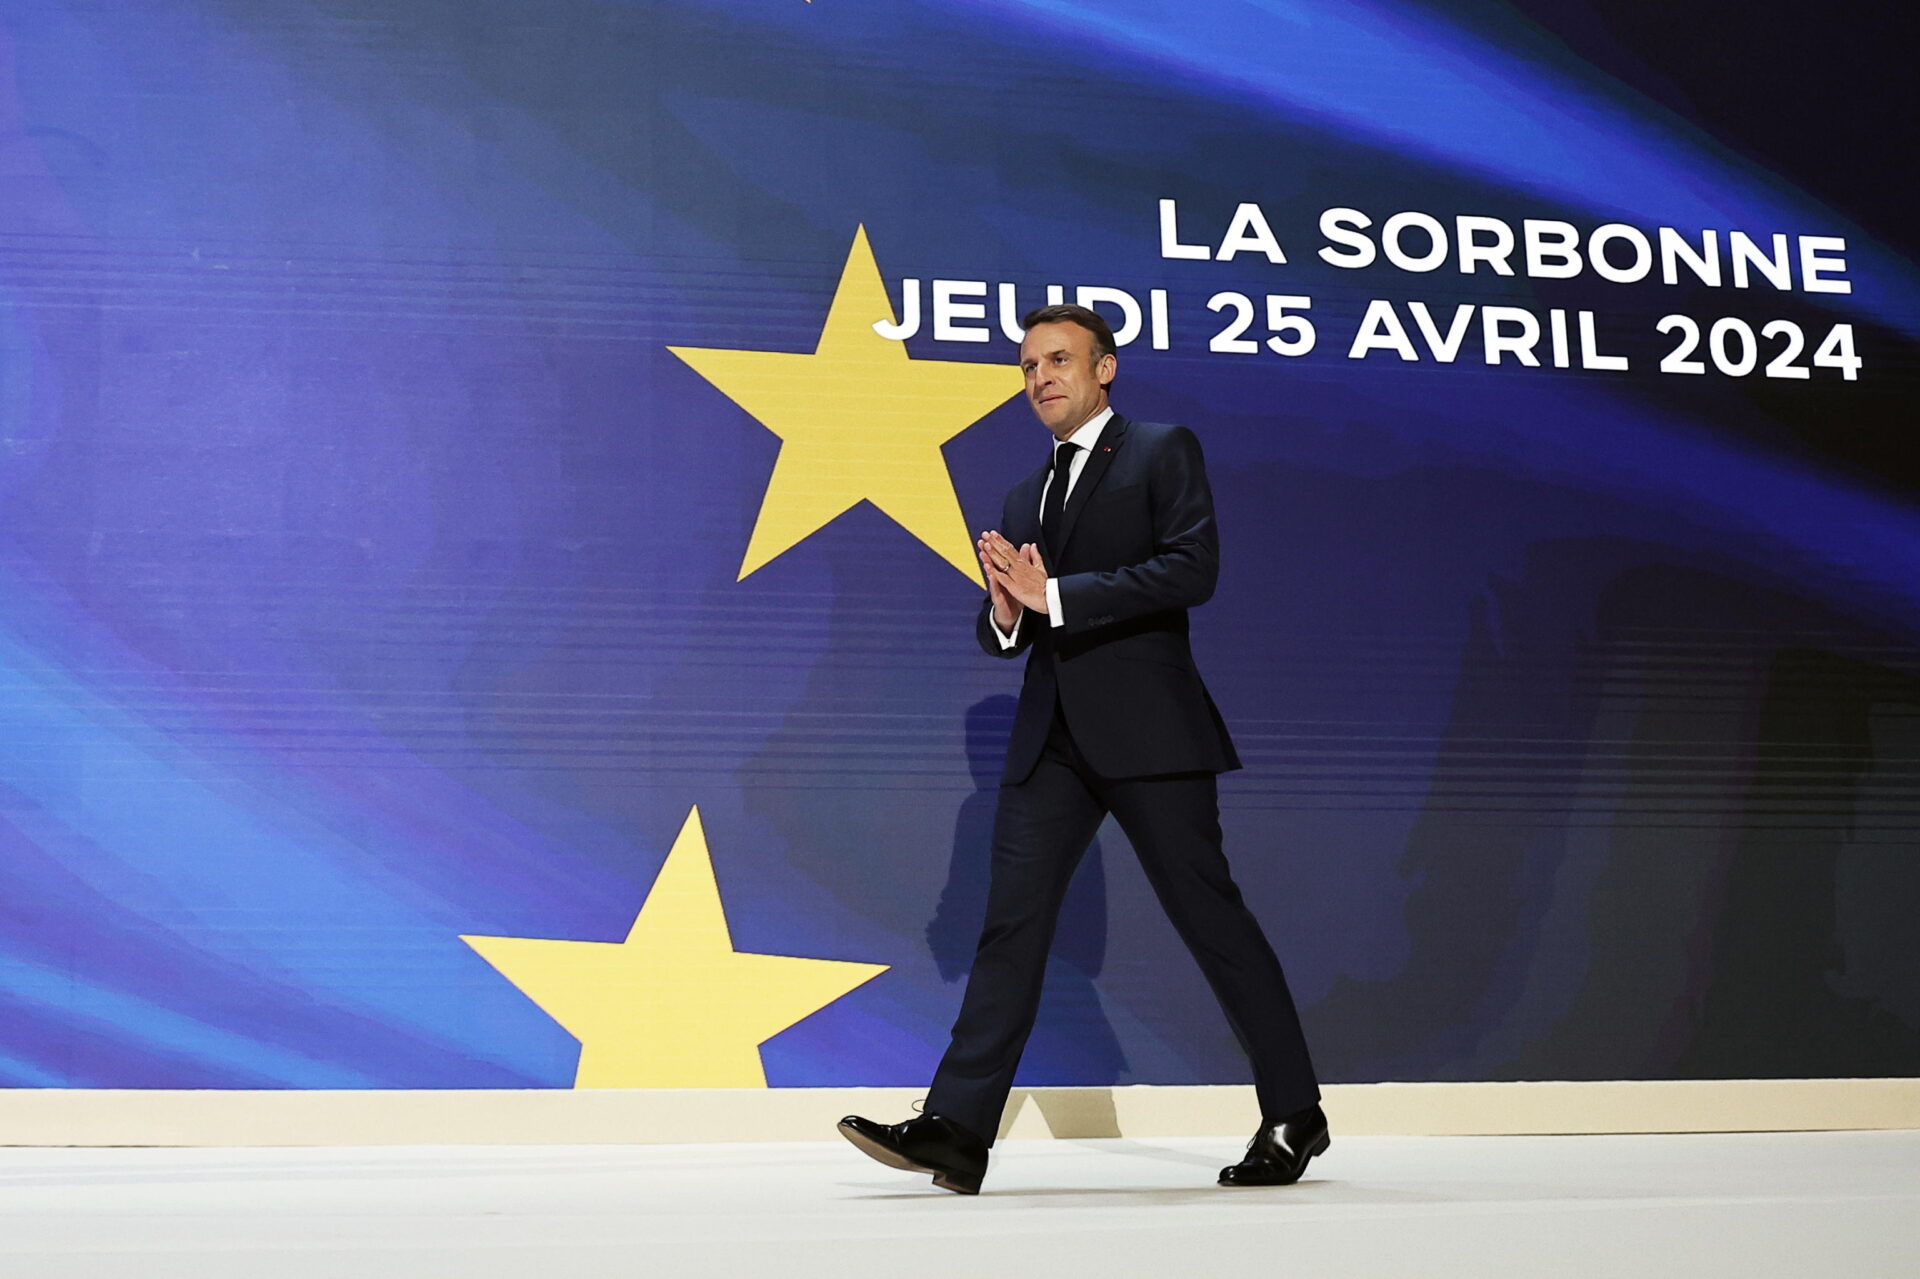 “L’Europa può morire”: Macron suona la carica ma non sa dove andare